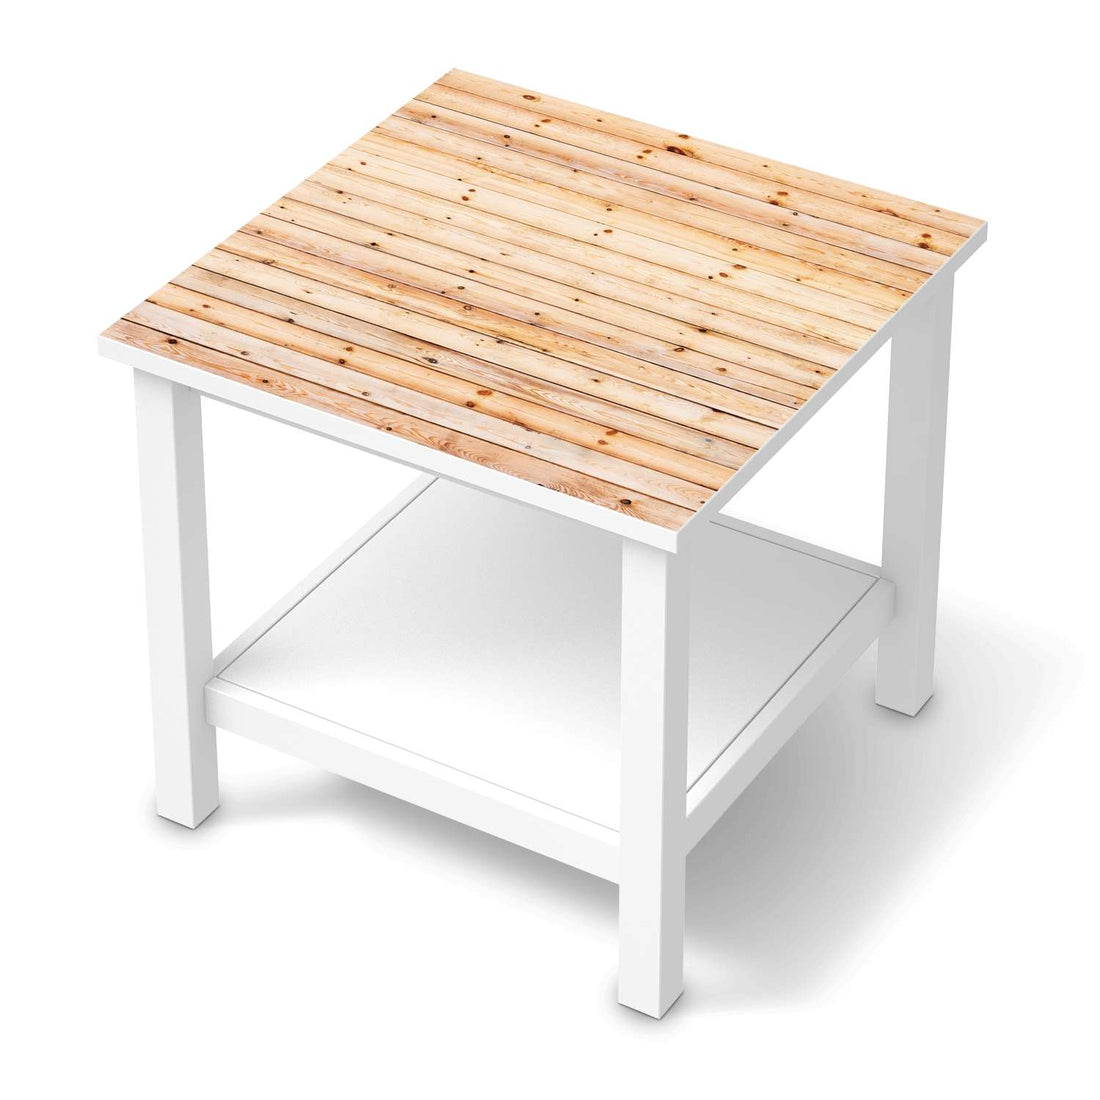 Möbel Klebefolie Bright Planks - IKEA Hemnes Beistelltisch 55x55 cm  - weiss